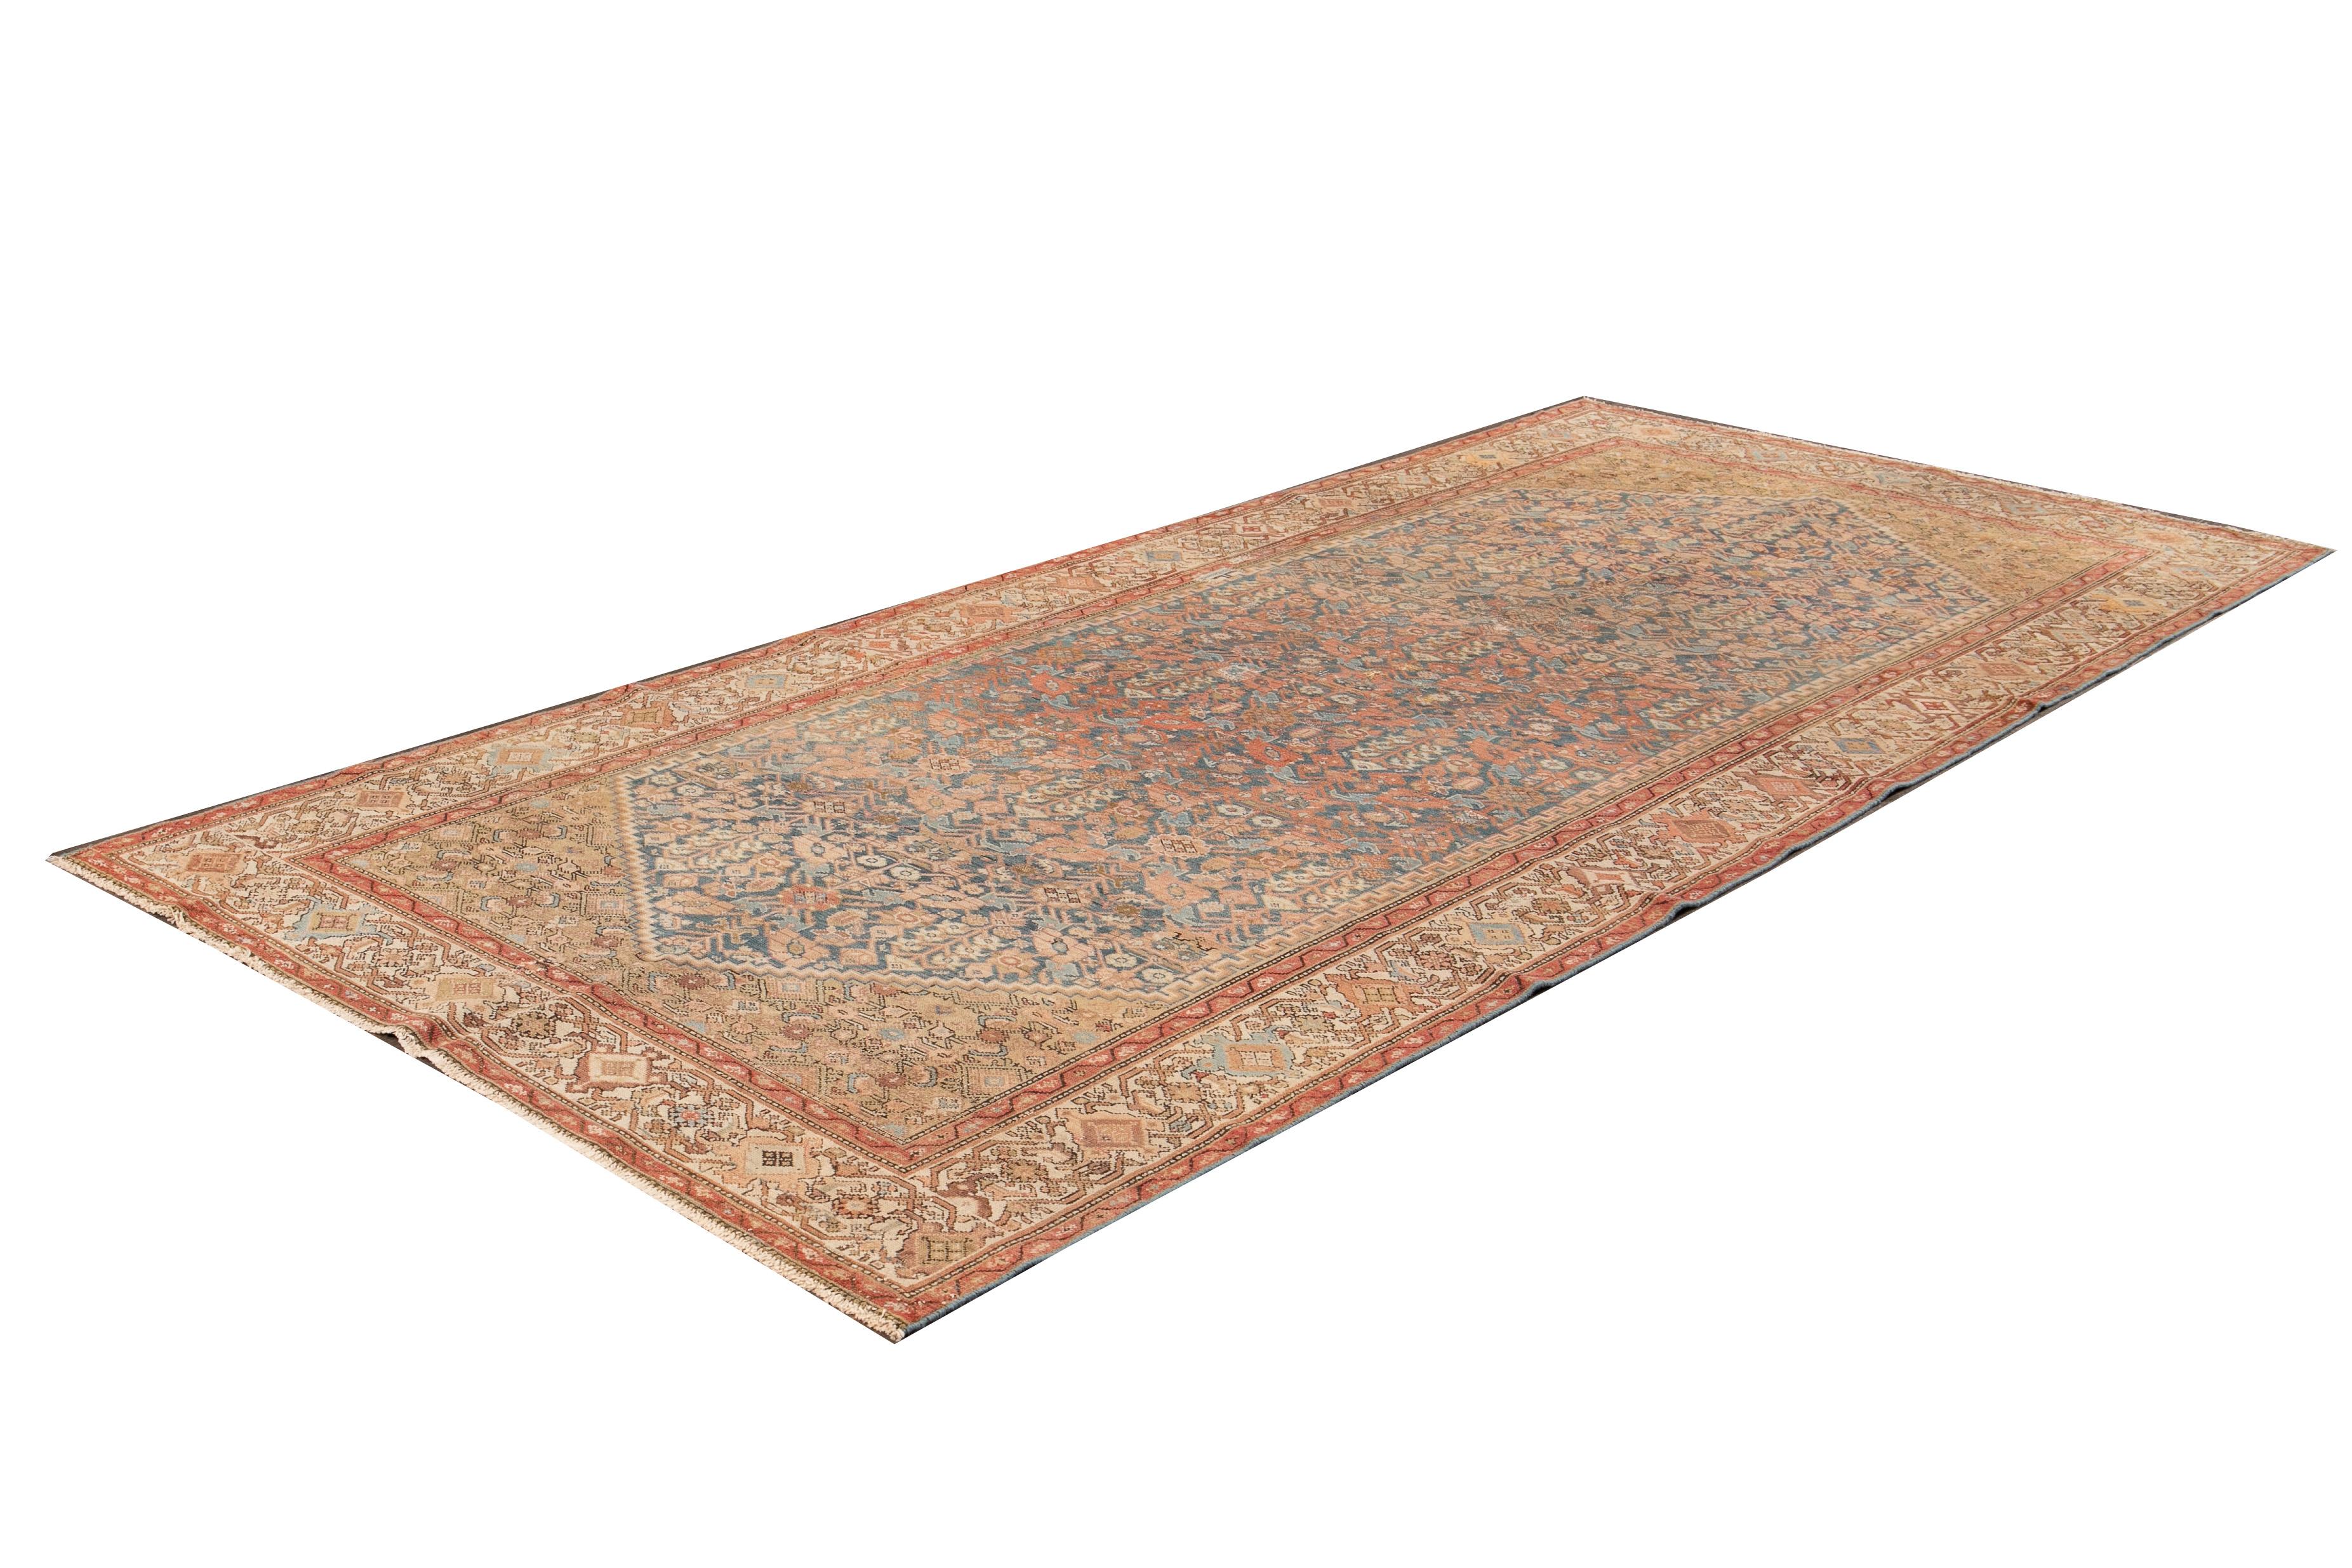 Schöner antiker persischer Malayer-Läufer mit rostbraunem Feld und Allover-Muster mit blauen Akzenten.

Dieser Teppich misst 5' 3